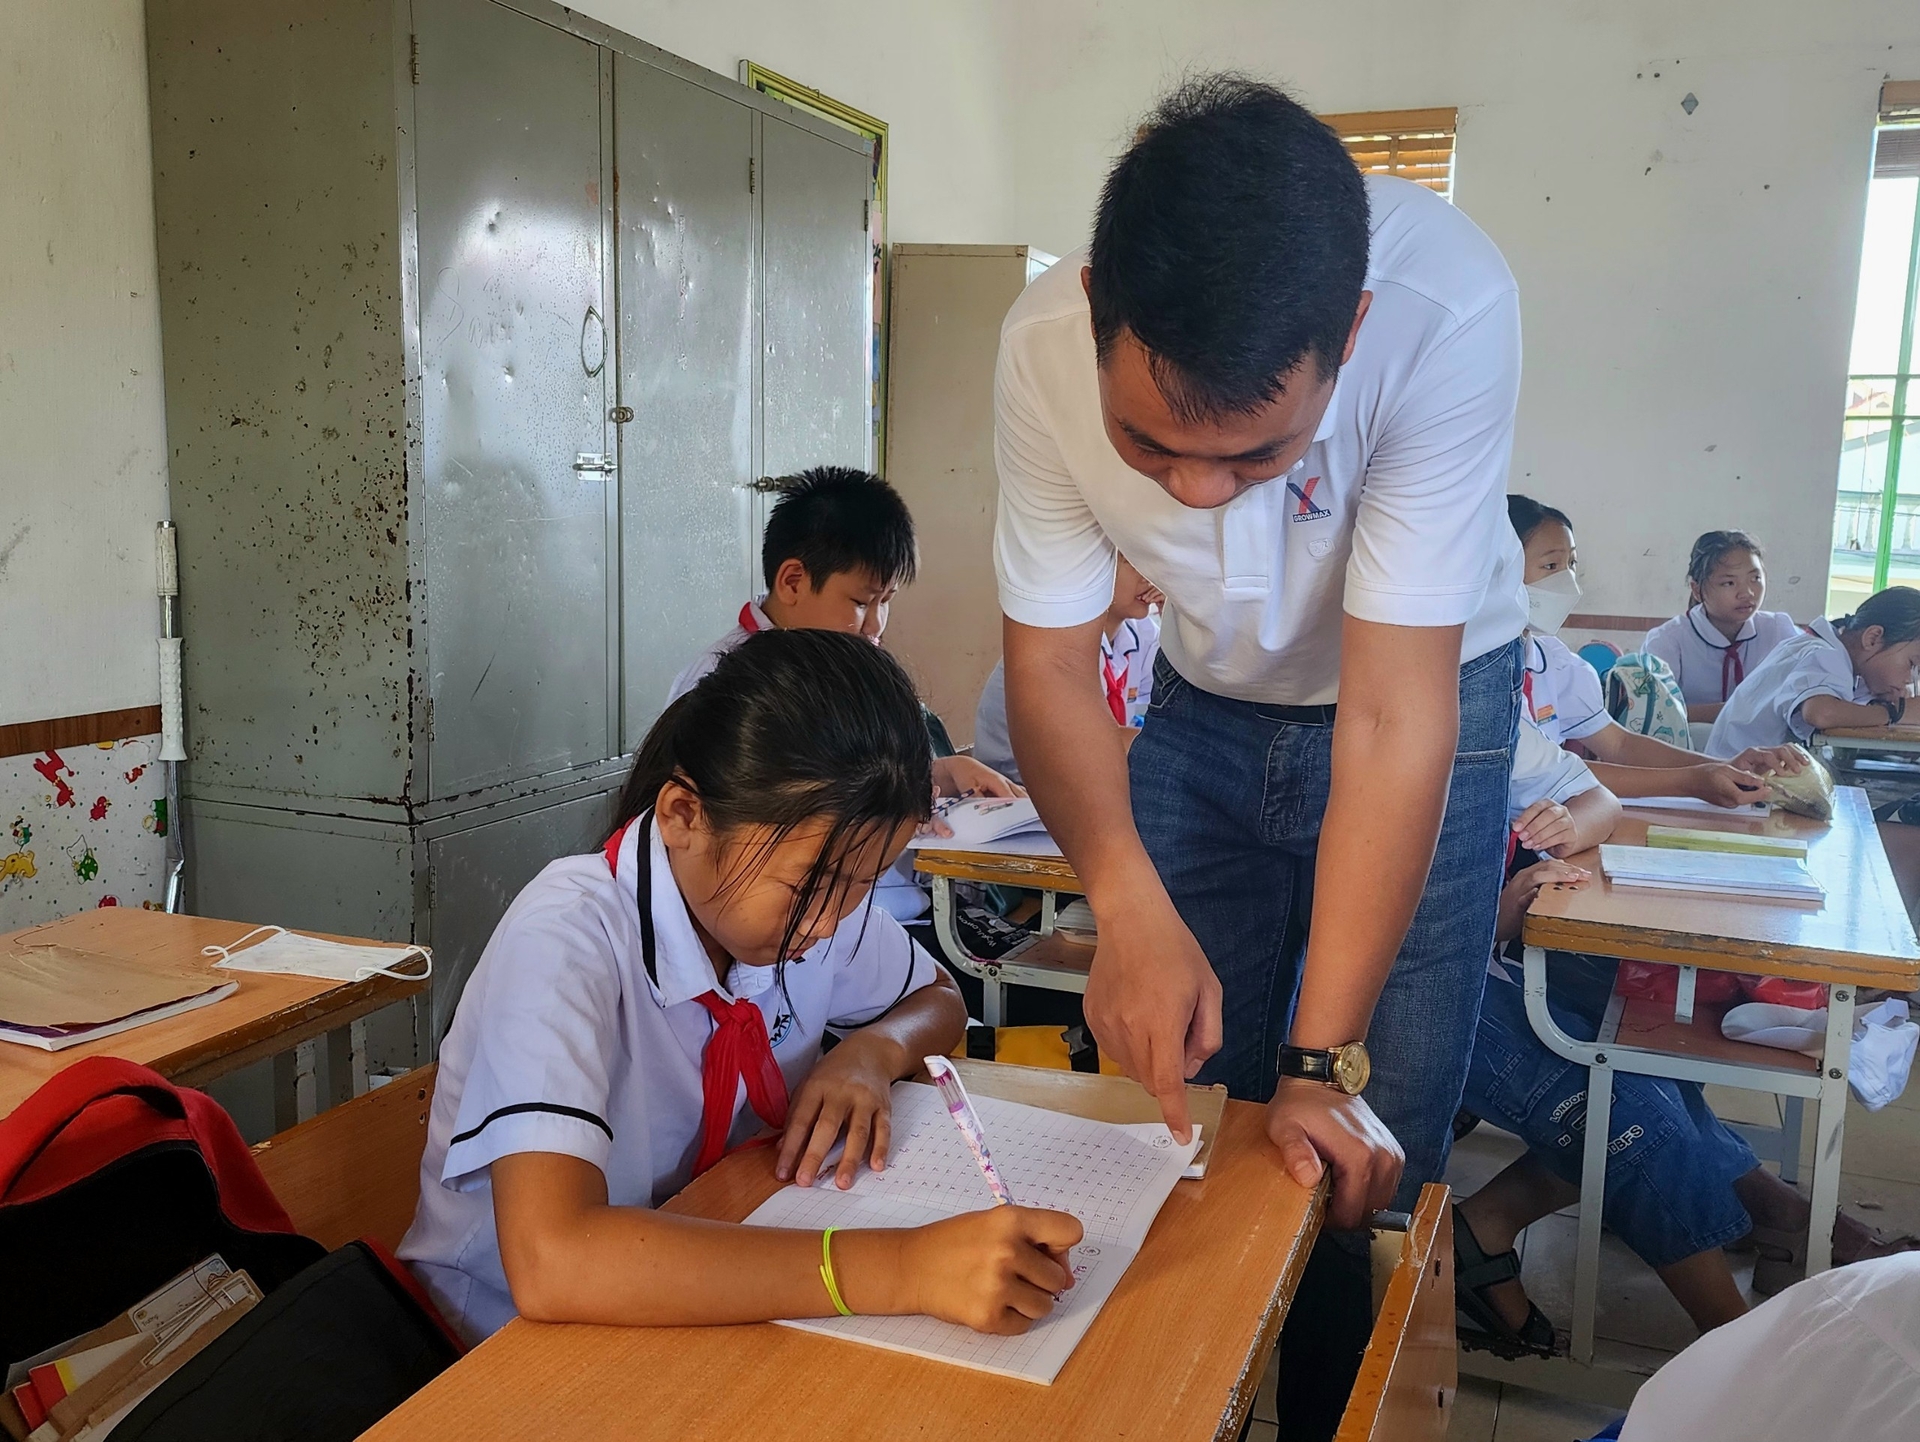 Em Vũ Thị Kiều Chi là một trong những trường hợp học sinh có hoàn cảnh éo le, khó khăn nhưng đã nỗ lực vươn lên học tập tốt. Ảnh: Đinh Mười.